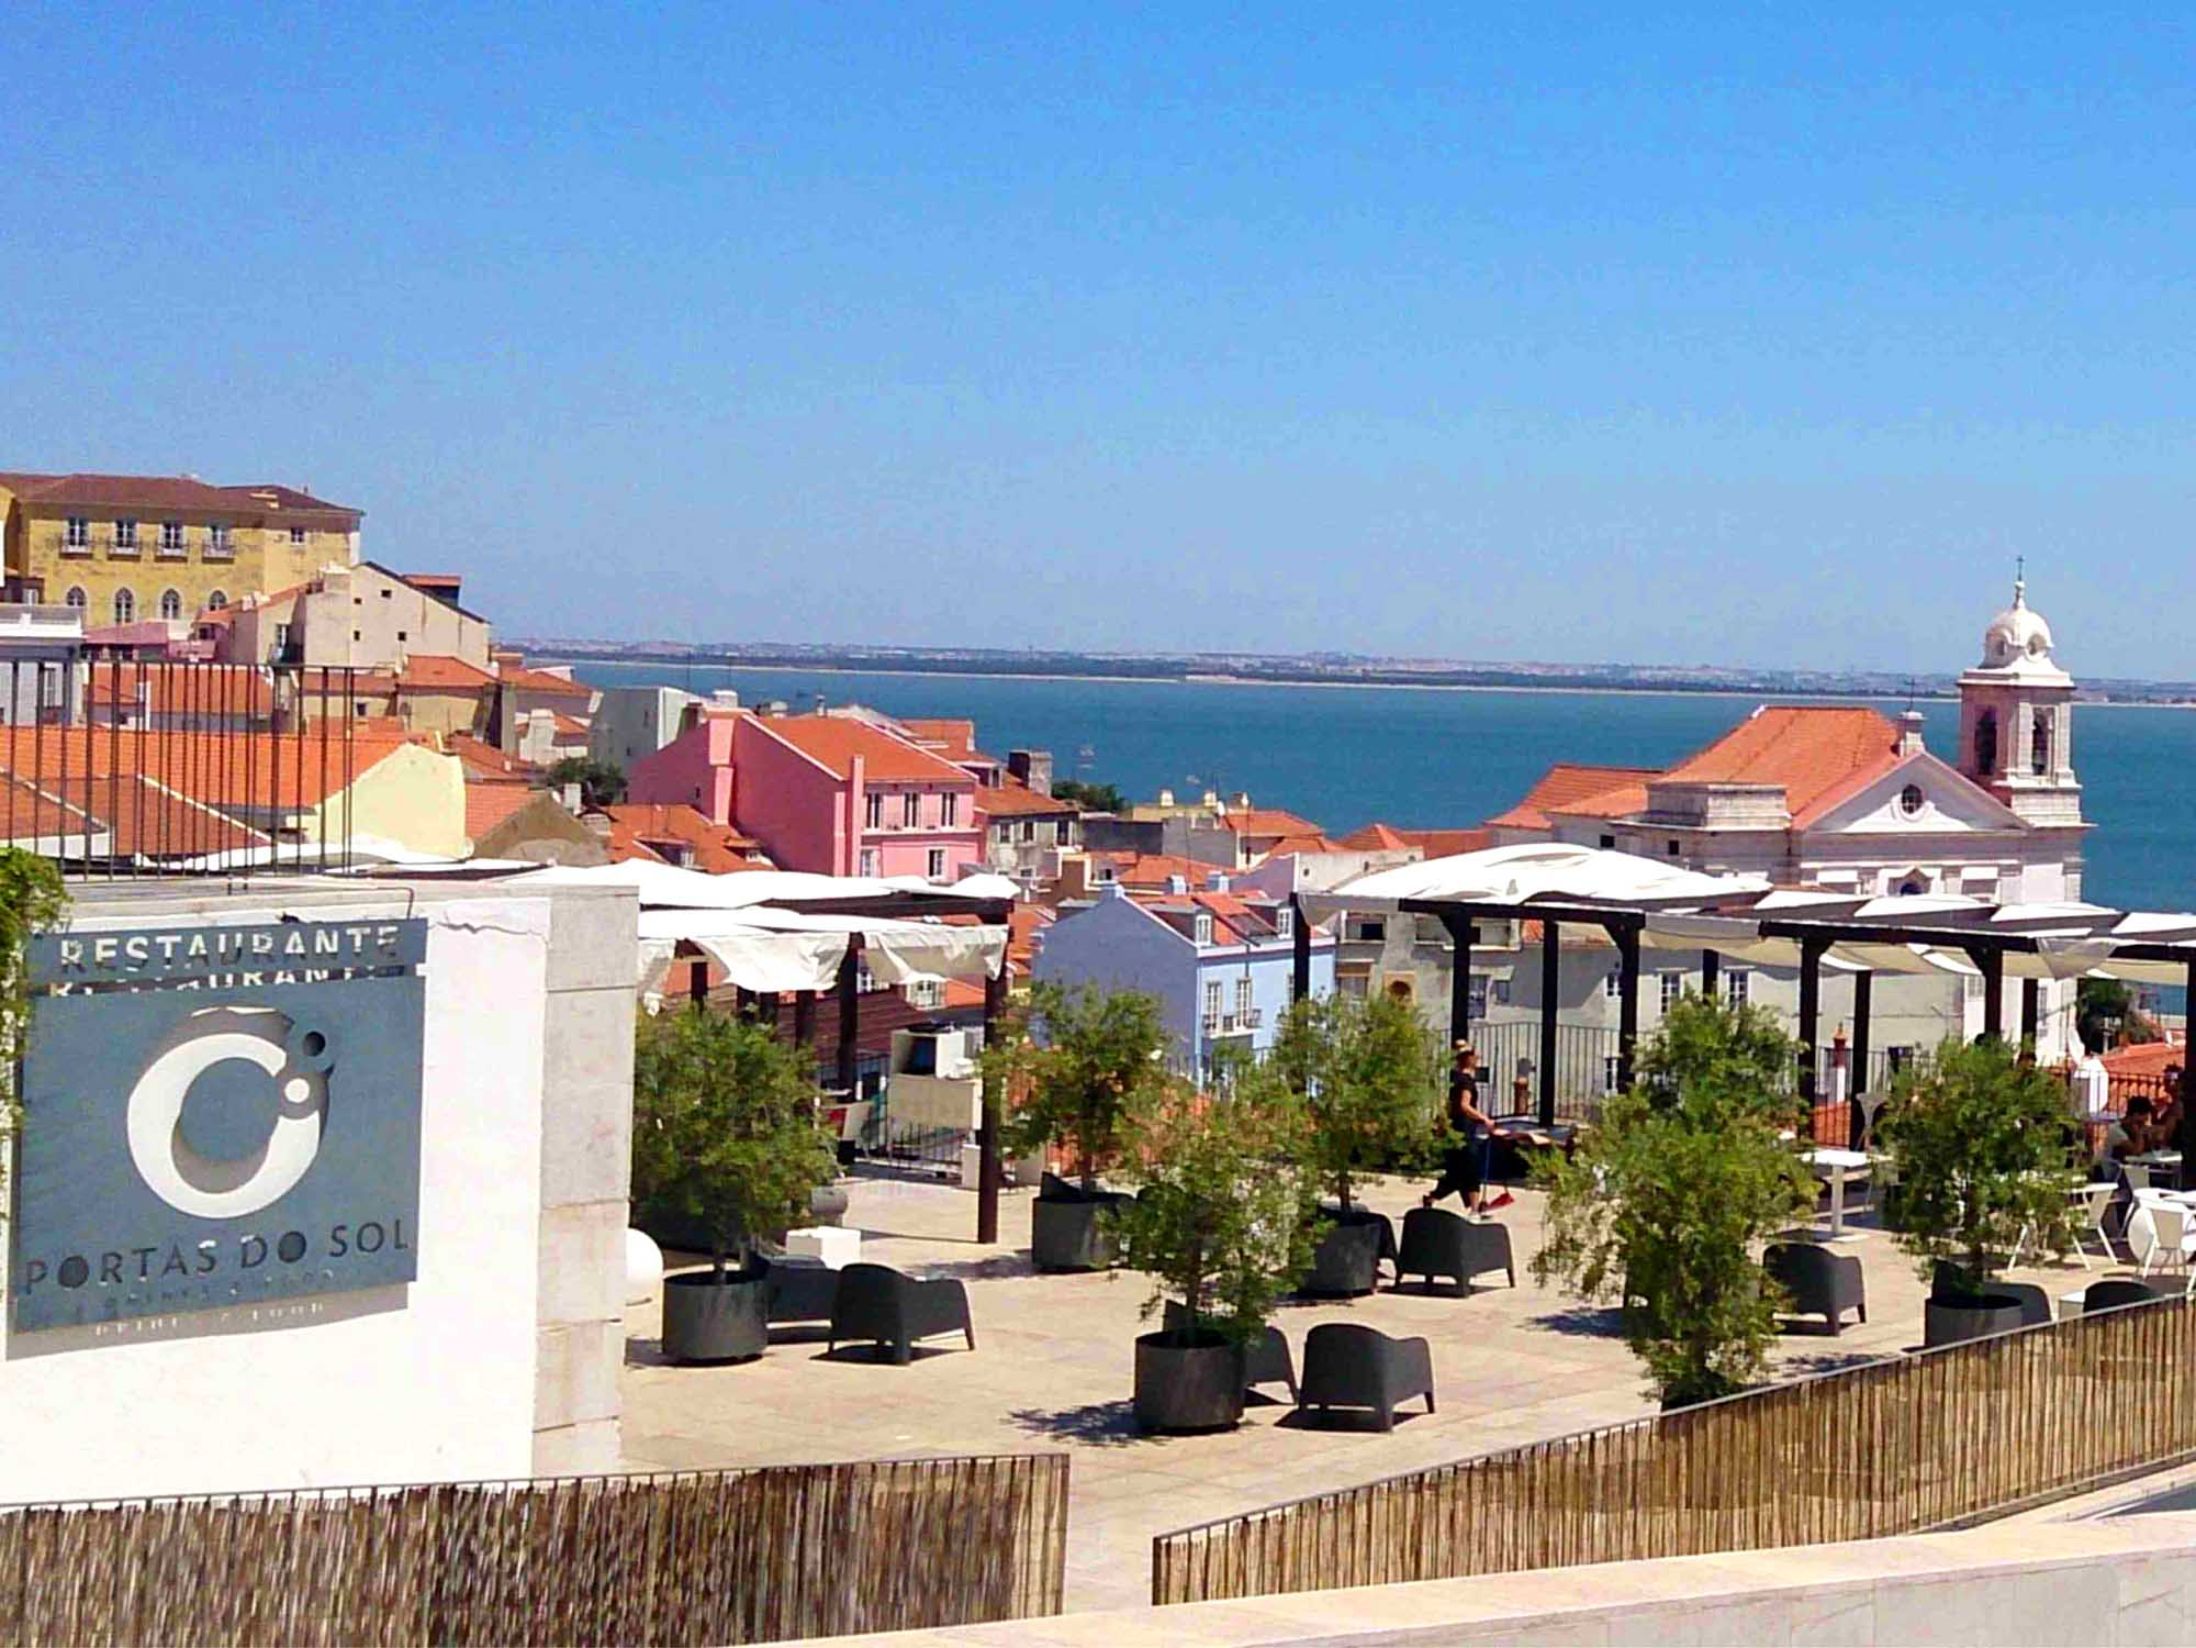 Portas do Sol Terrace - Best Bars in Lisbon